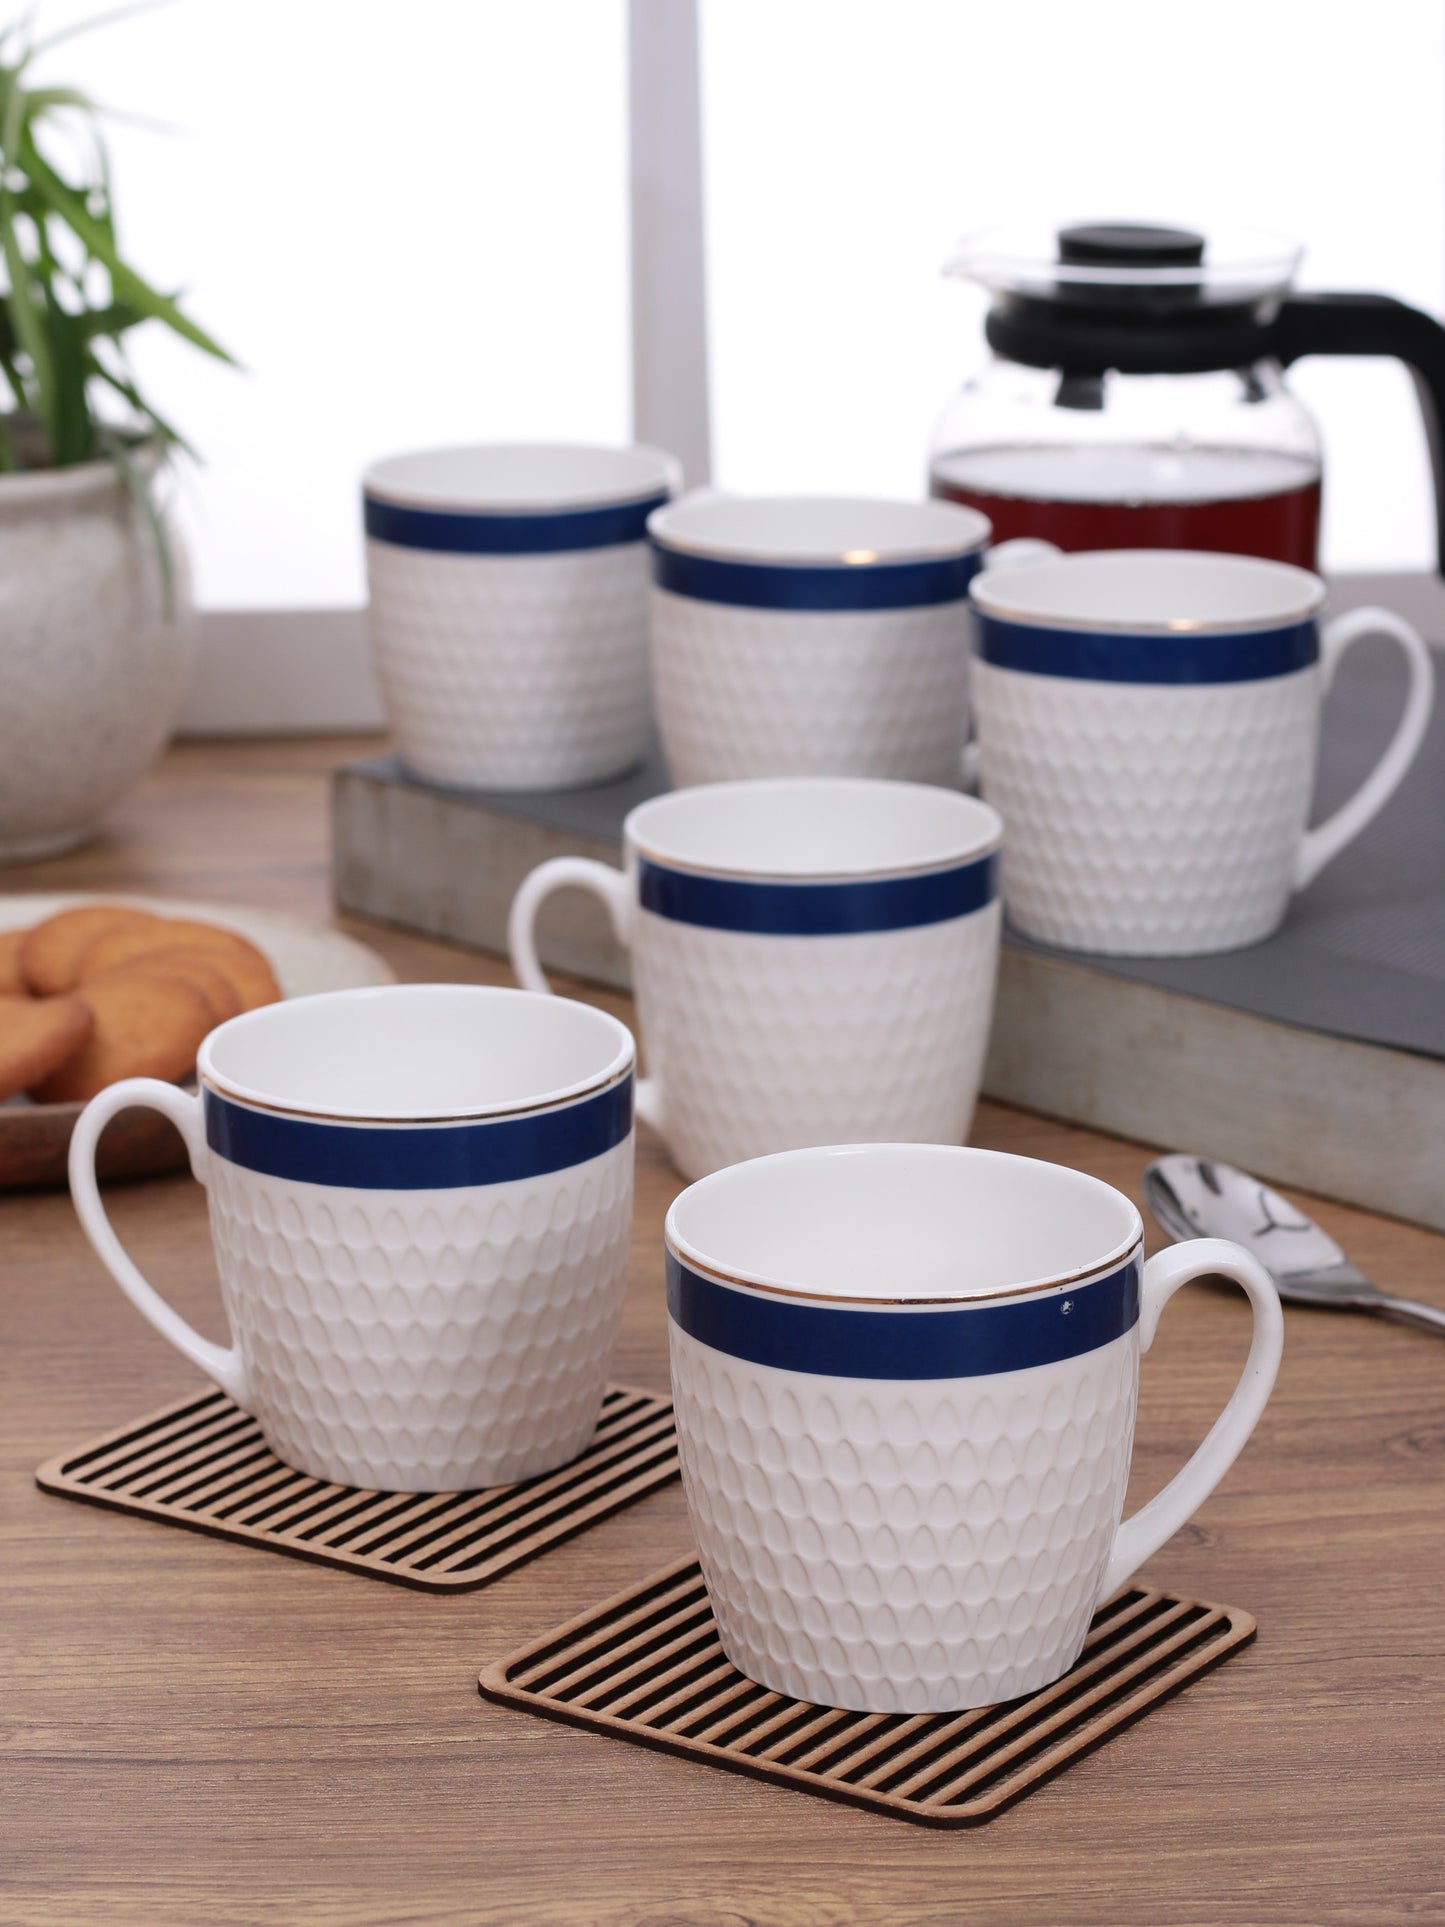 Olive Impression Coffee & Tea Mugs, 200ml, Set of 6 (1121)